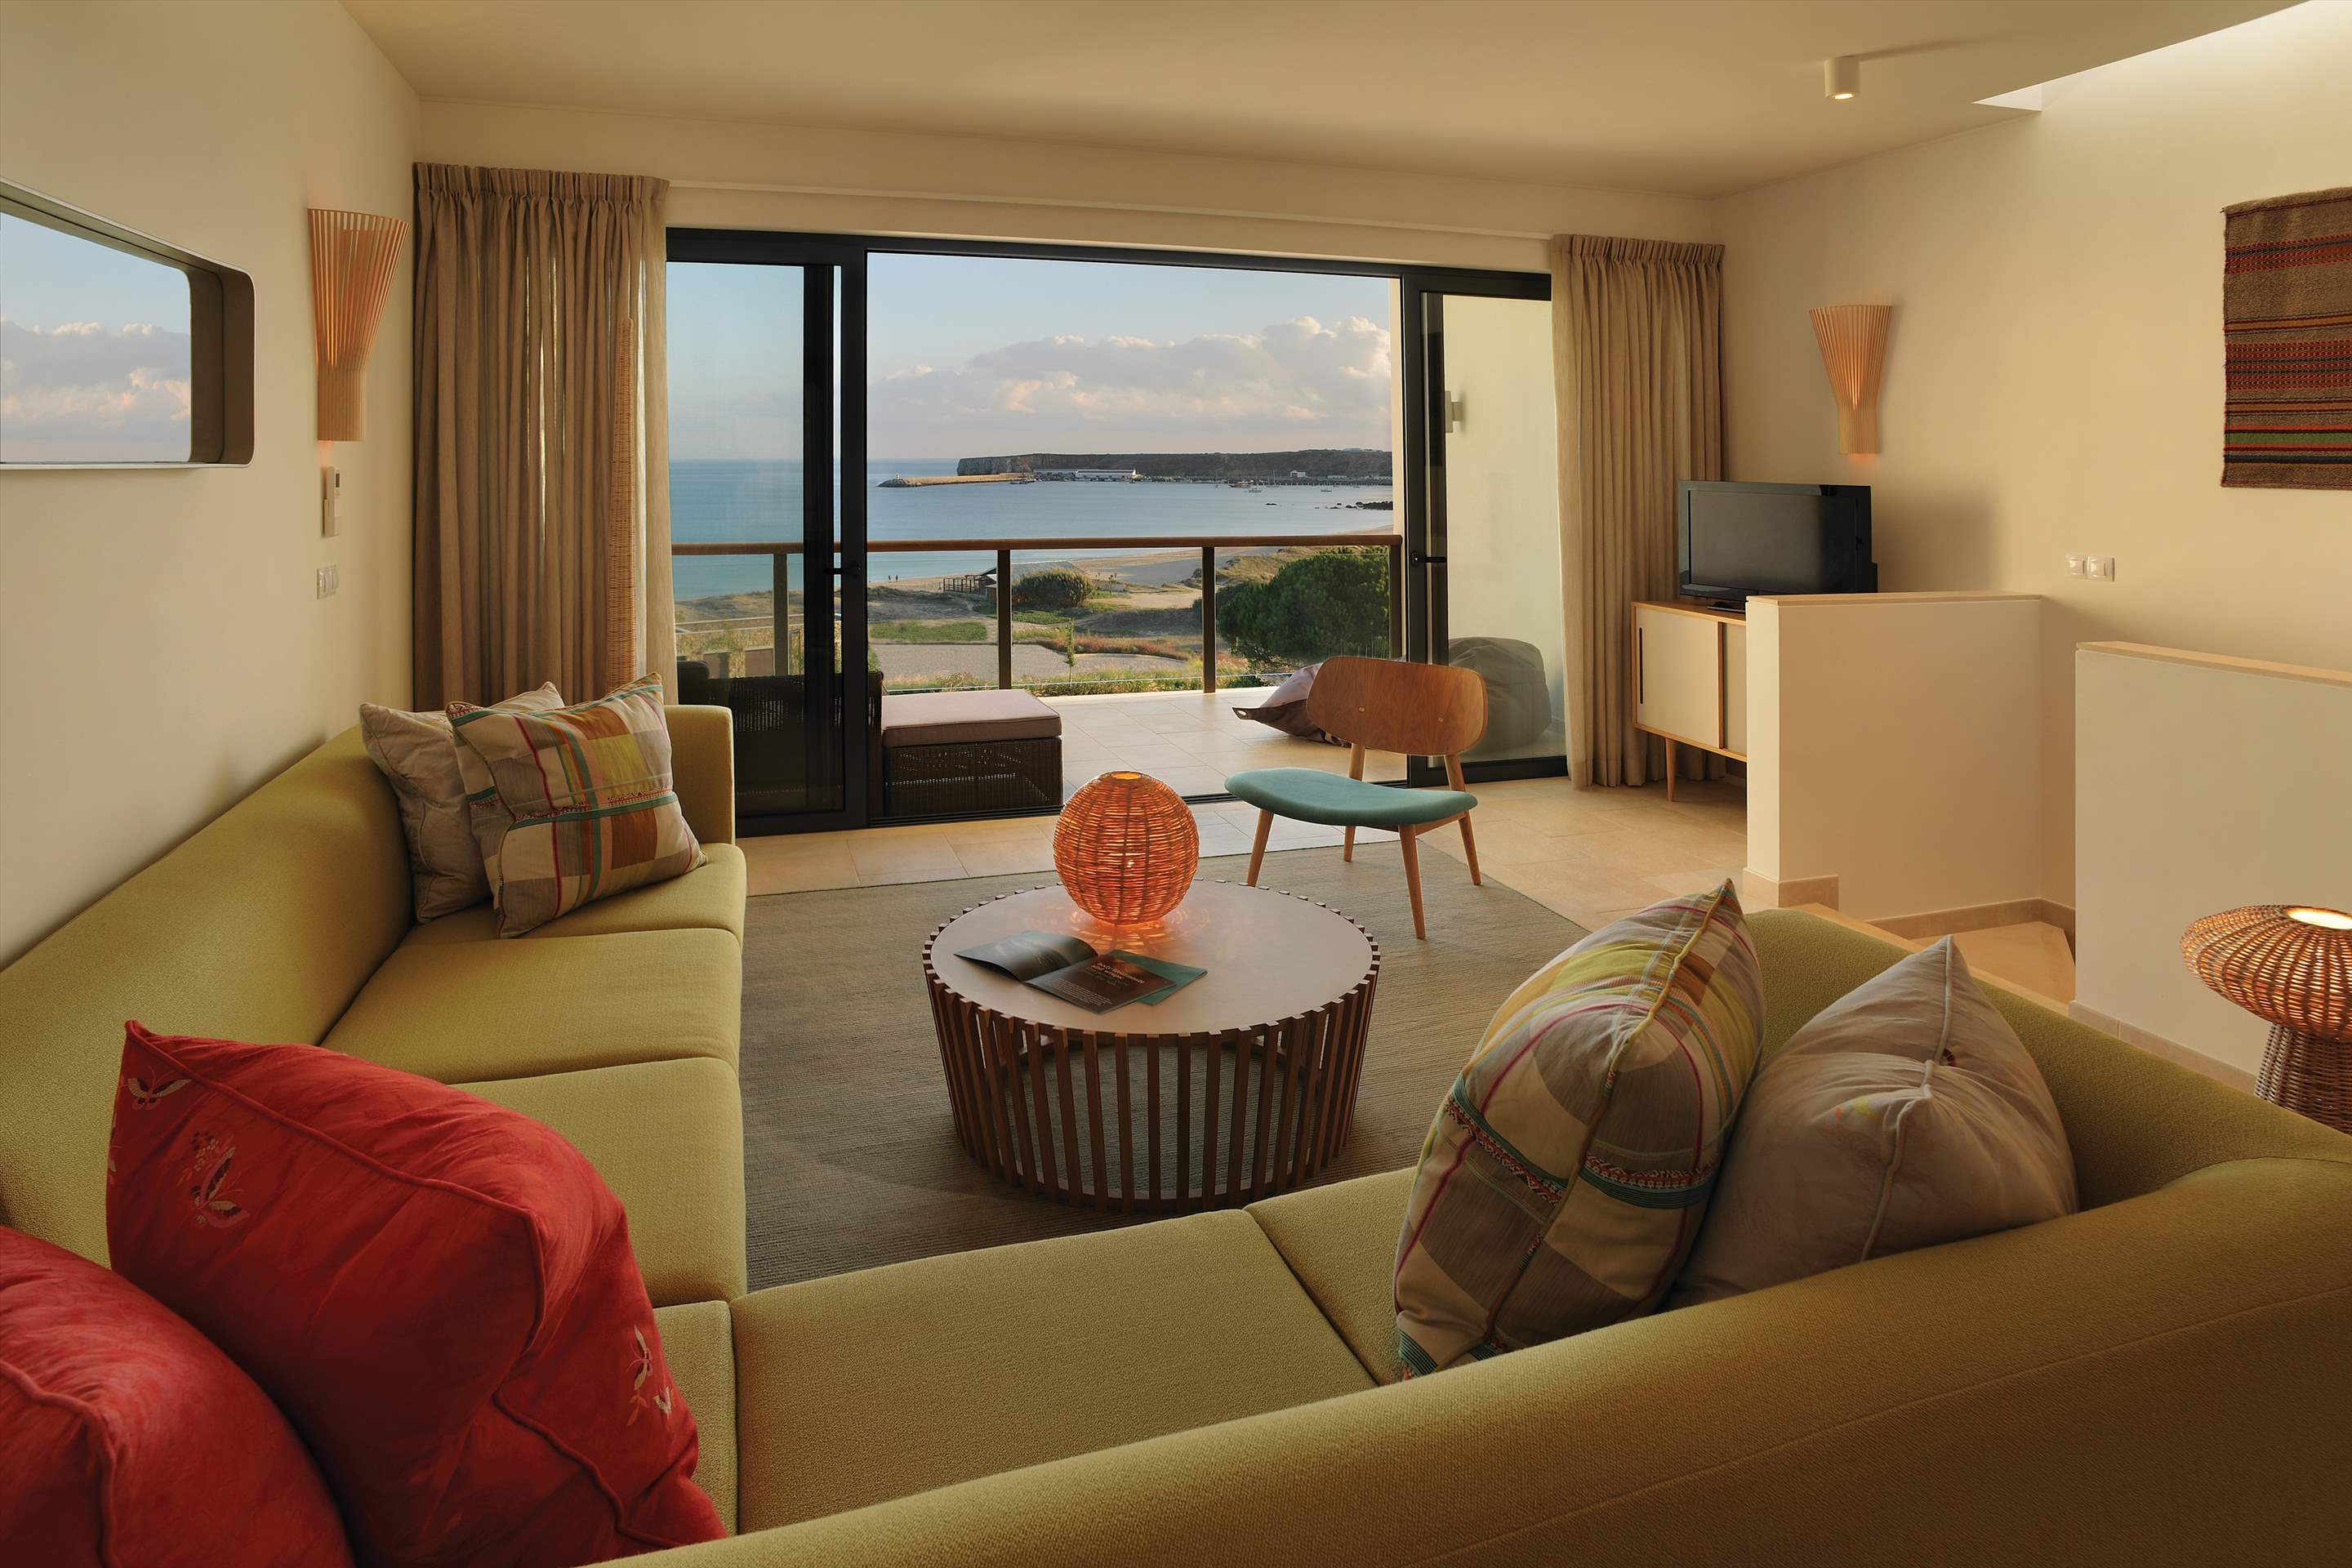 Martinhal Village Ocean House, partial ocean view, Grand Deluxe Two Bedrooms, 2 bedroom villa in Martinhal Sagres, Algarve